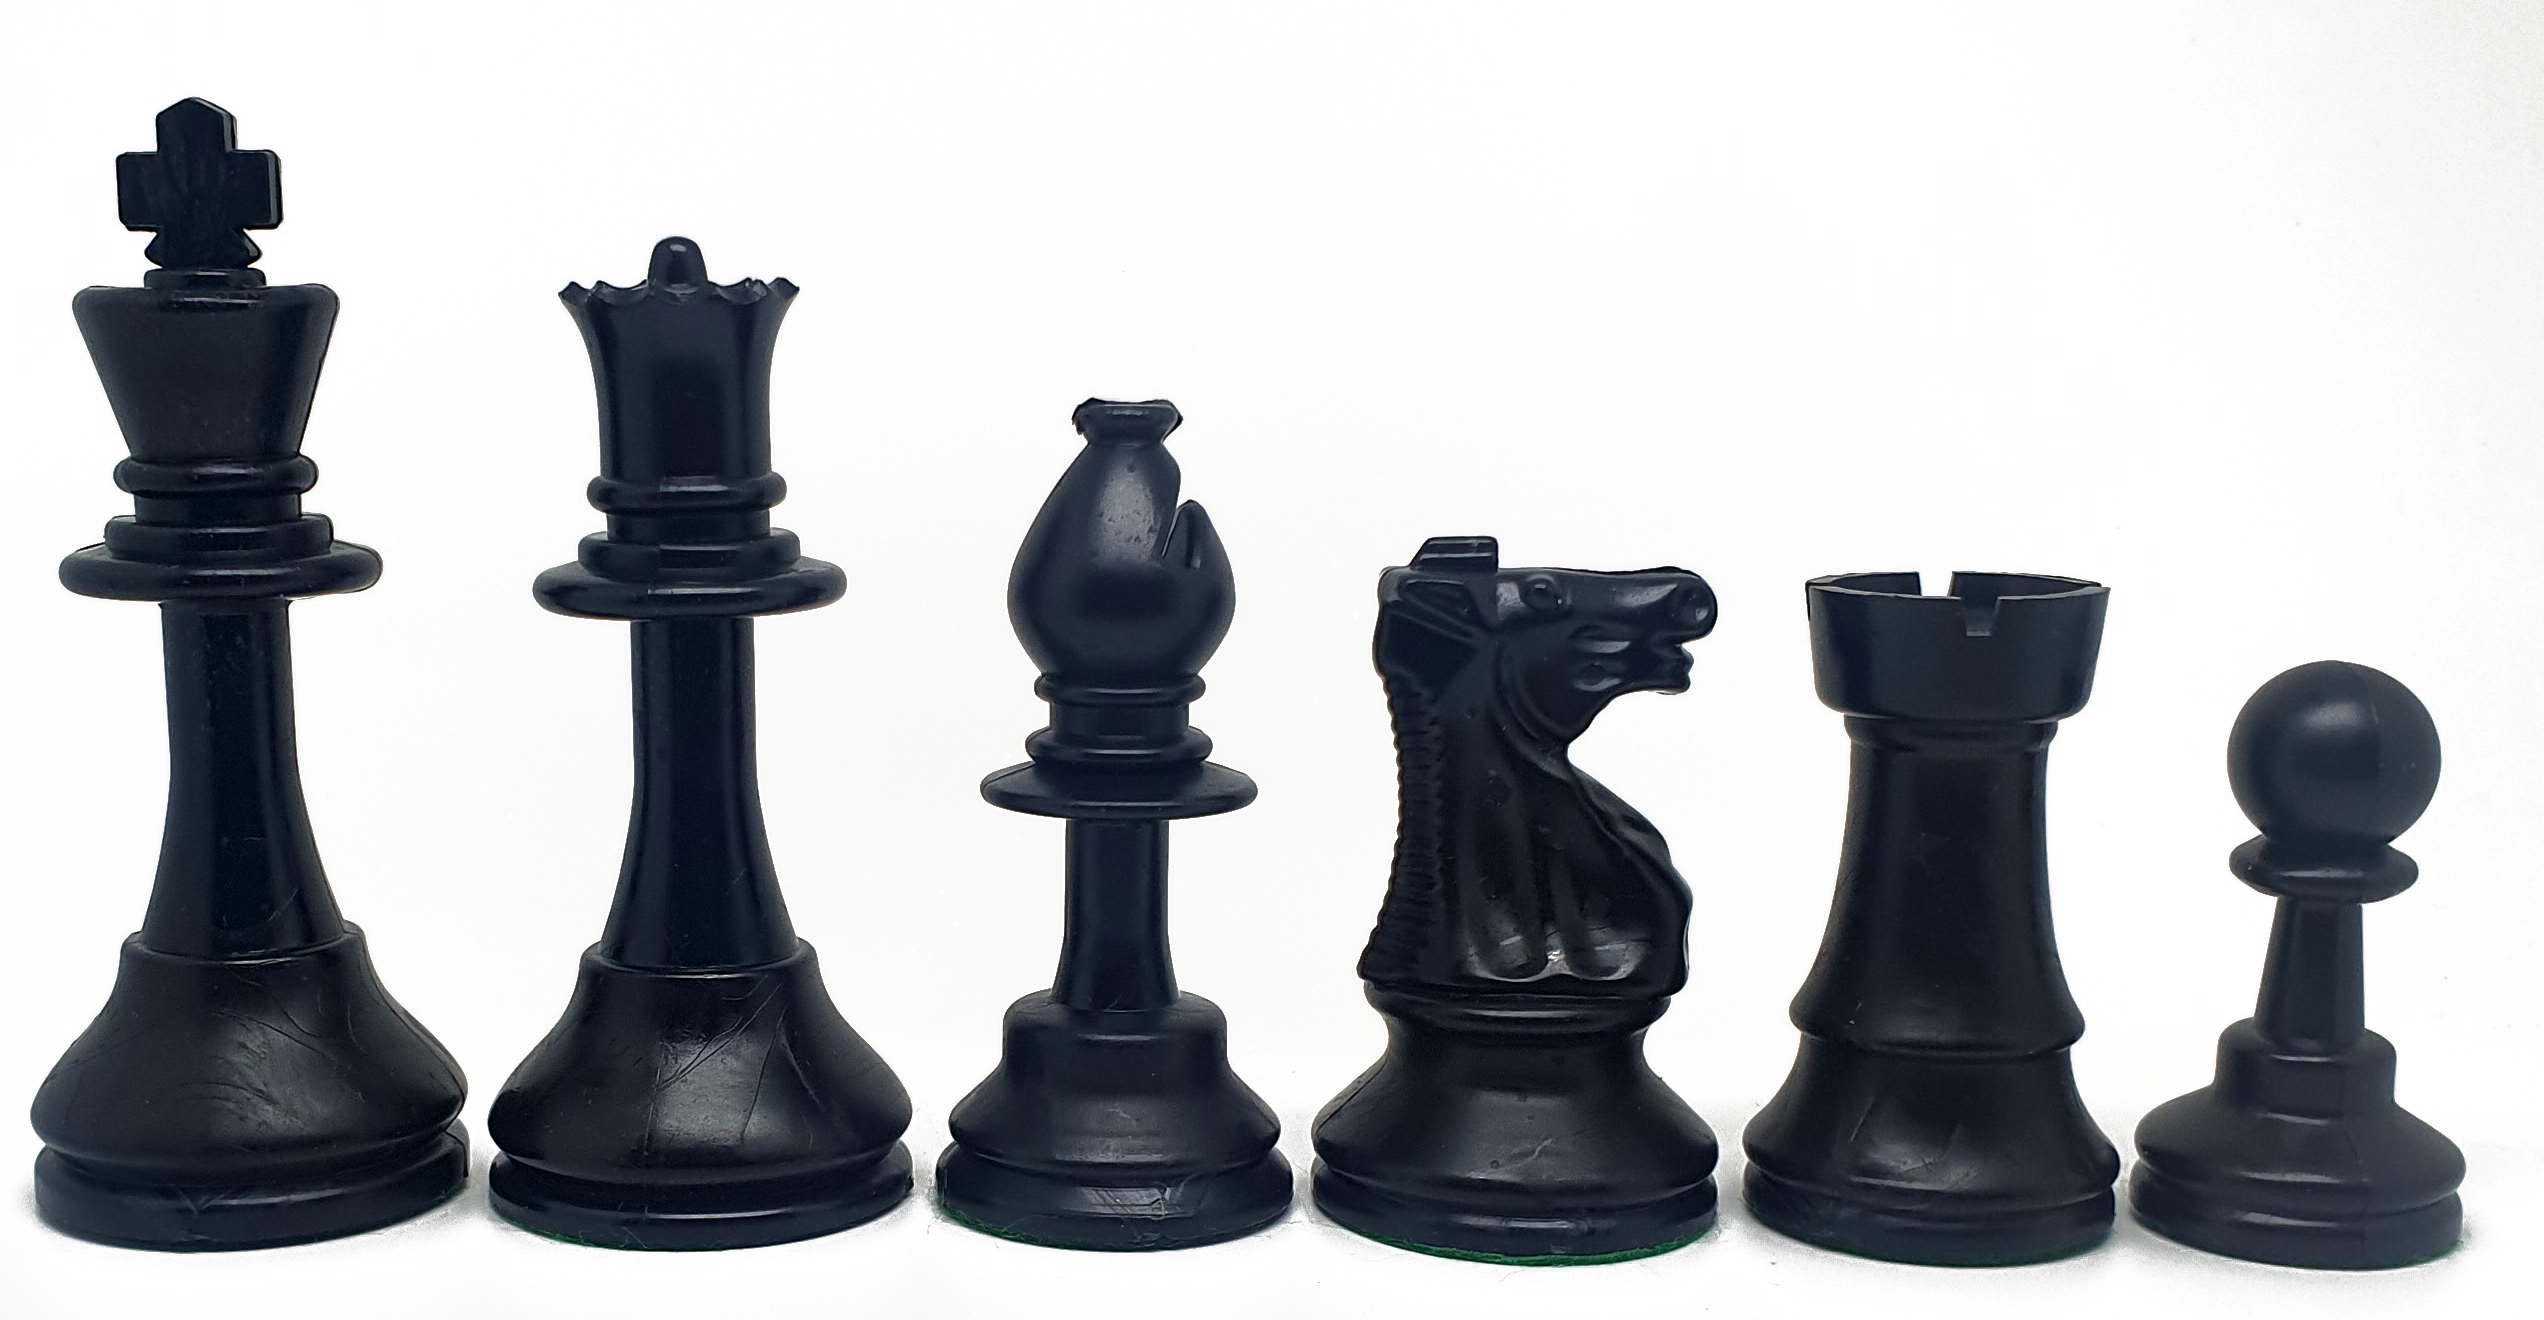 Piezas de ajedrez de plástico Staunton 5 estándar. Doble dama (altura del rey: 9cm).